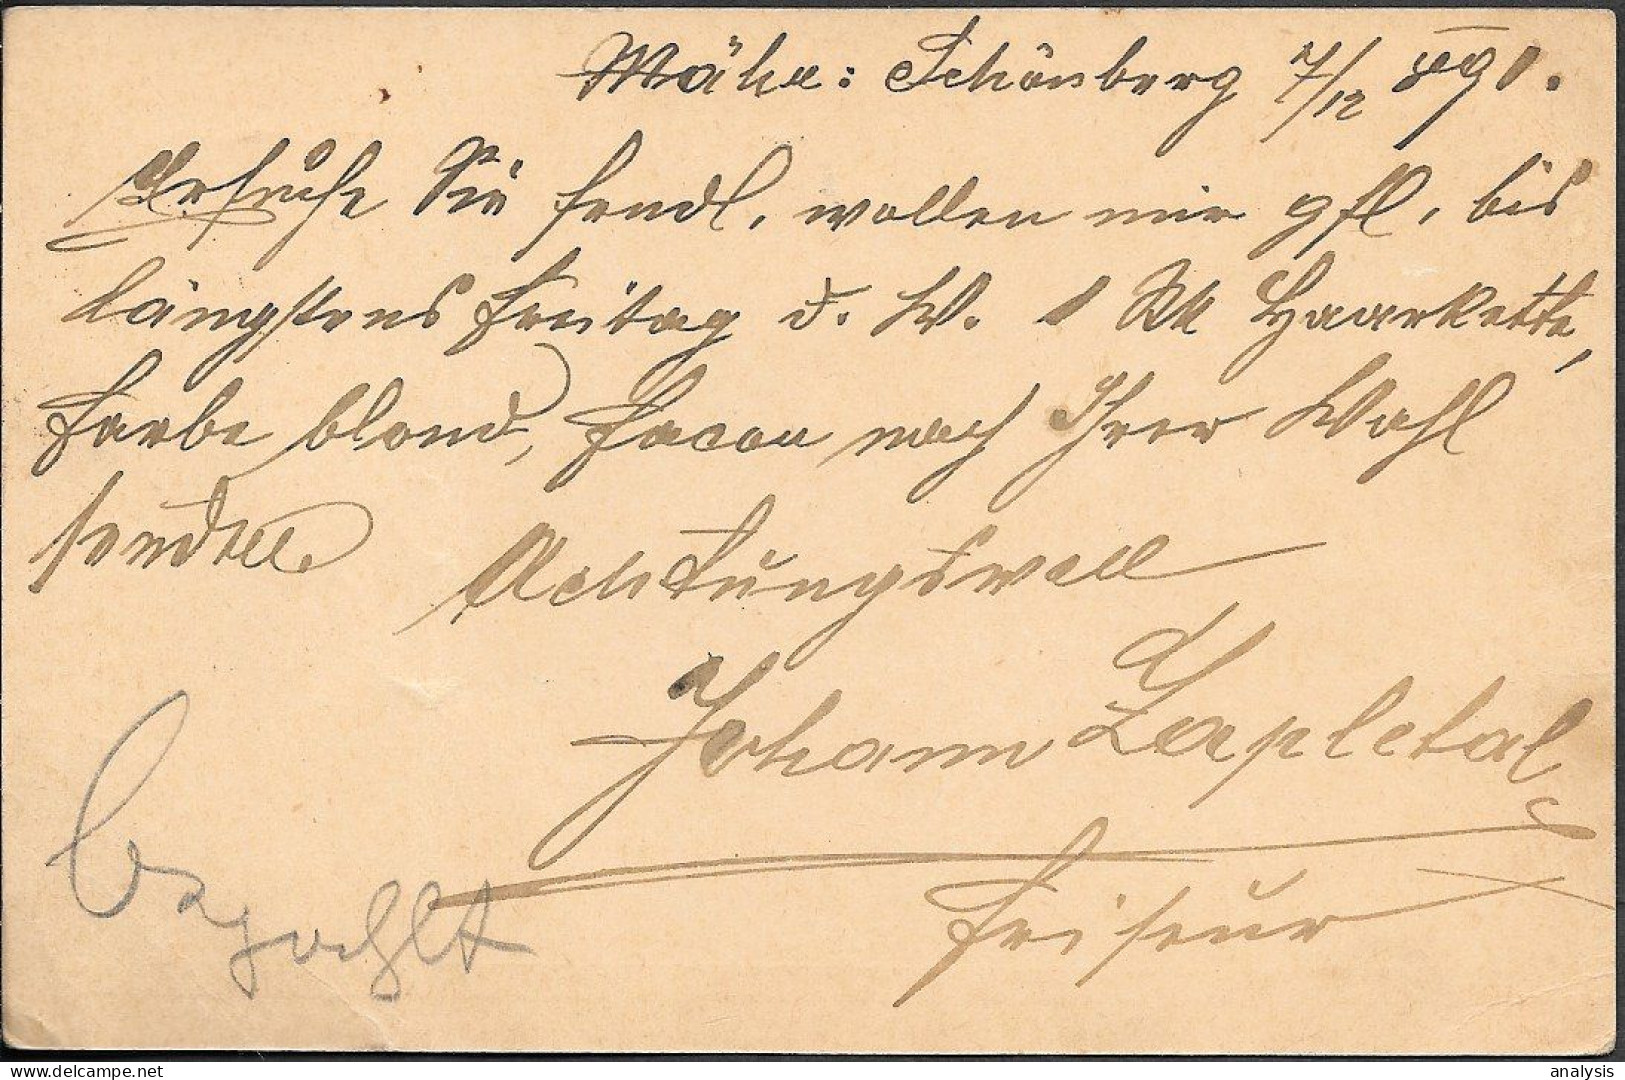 Austria Böhmen Mähren Mährisch Schönberg Postal Stationery Card Mailed 1891 - Brieven En Documenten